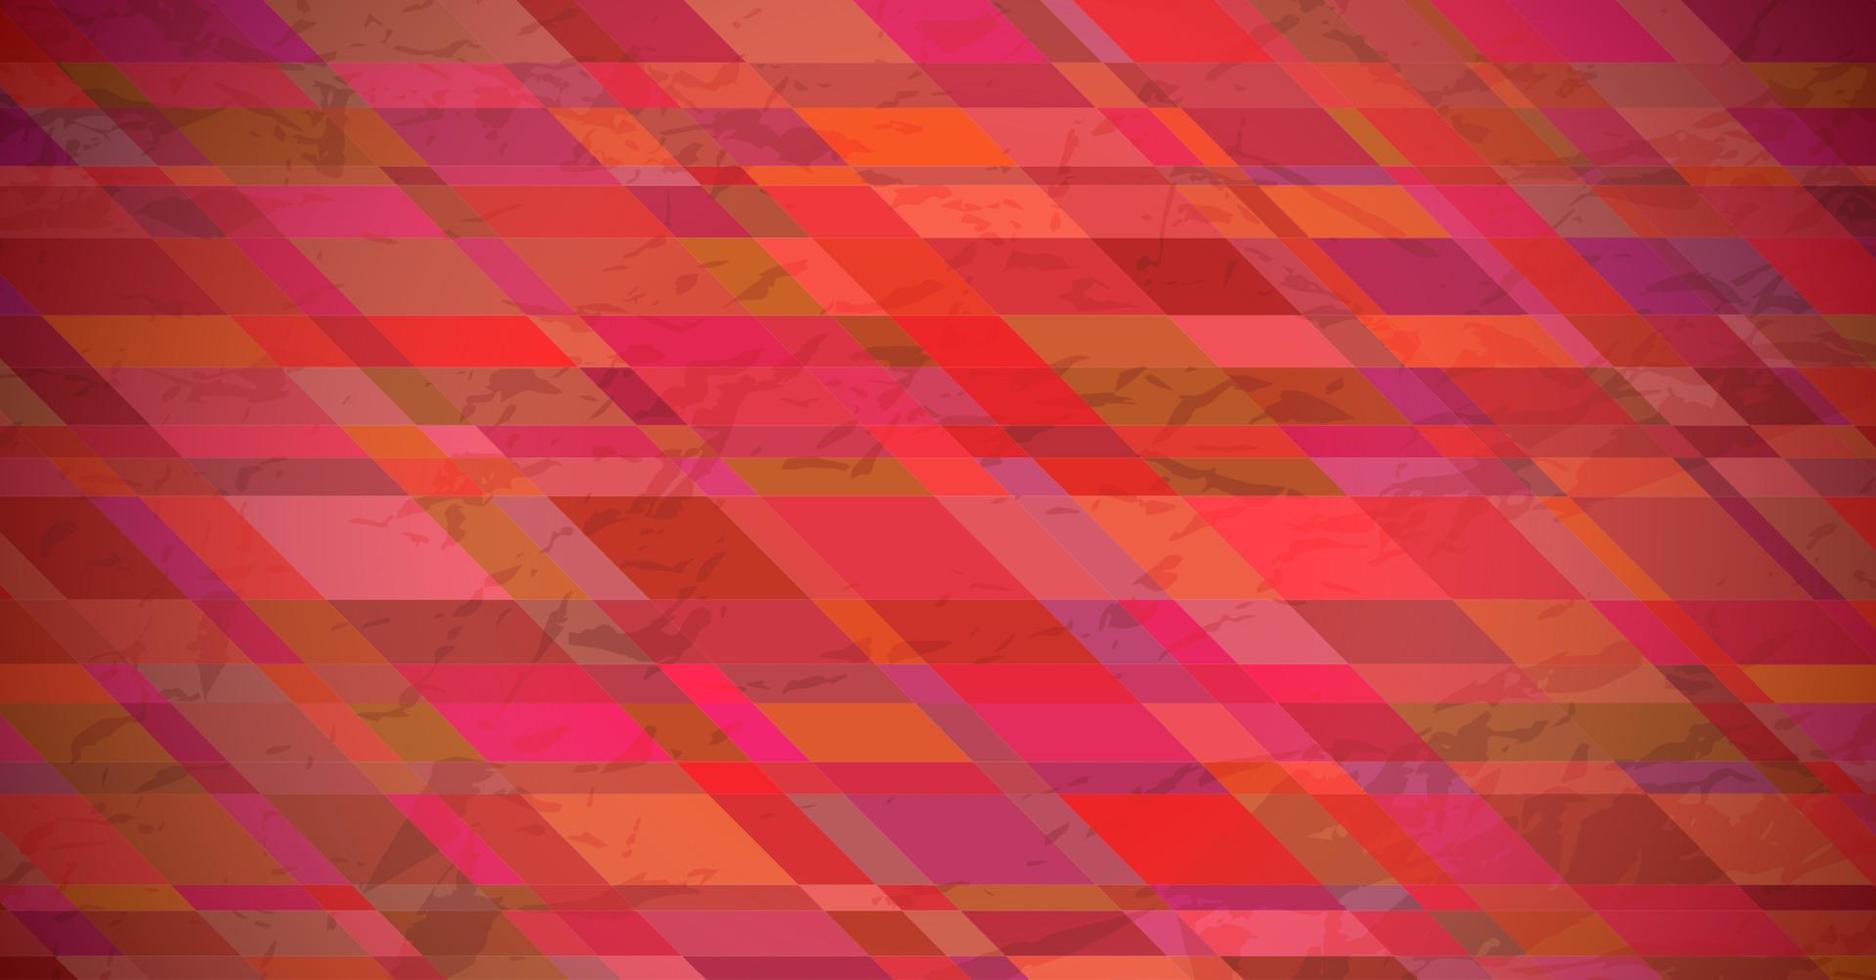 abstrakt texturerad bakgrund med röd färgrik rektanglar. baner design. skön trogen dynamisk geometrisk mönster design. vektor illustration